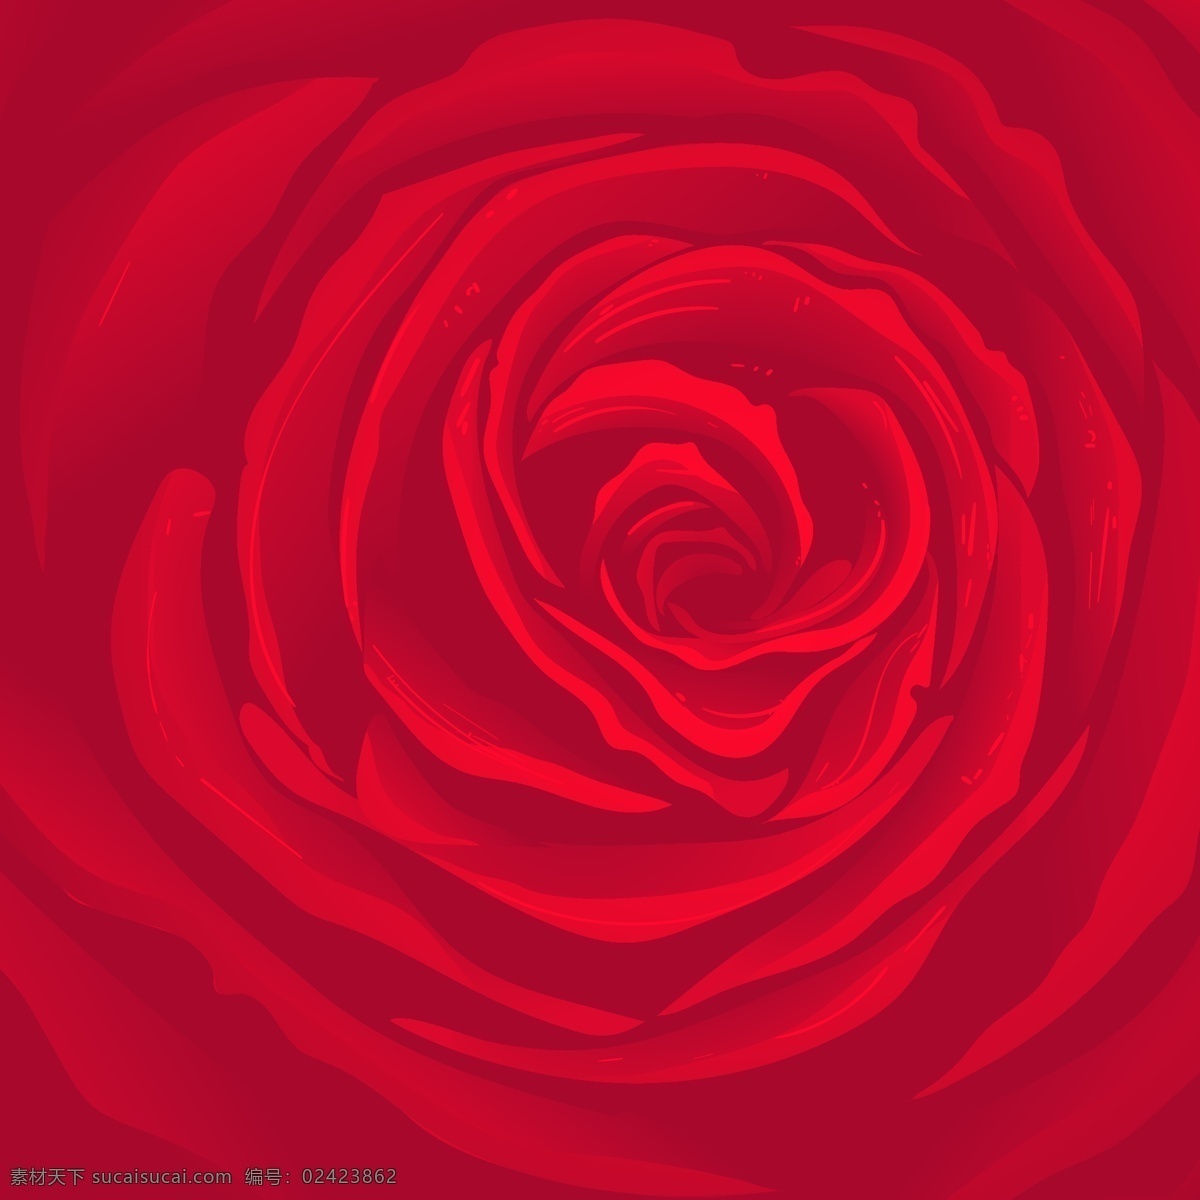 玫瑰花背景图 玫瑰花 花朵 红色 背景图 矢量 底纹边框 抽象底纹